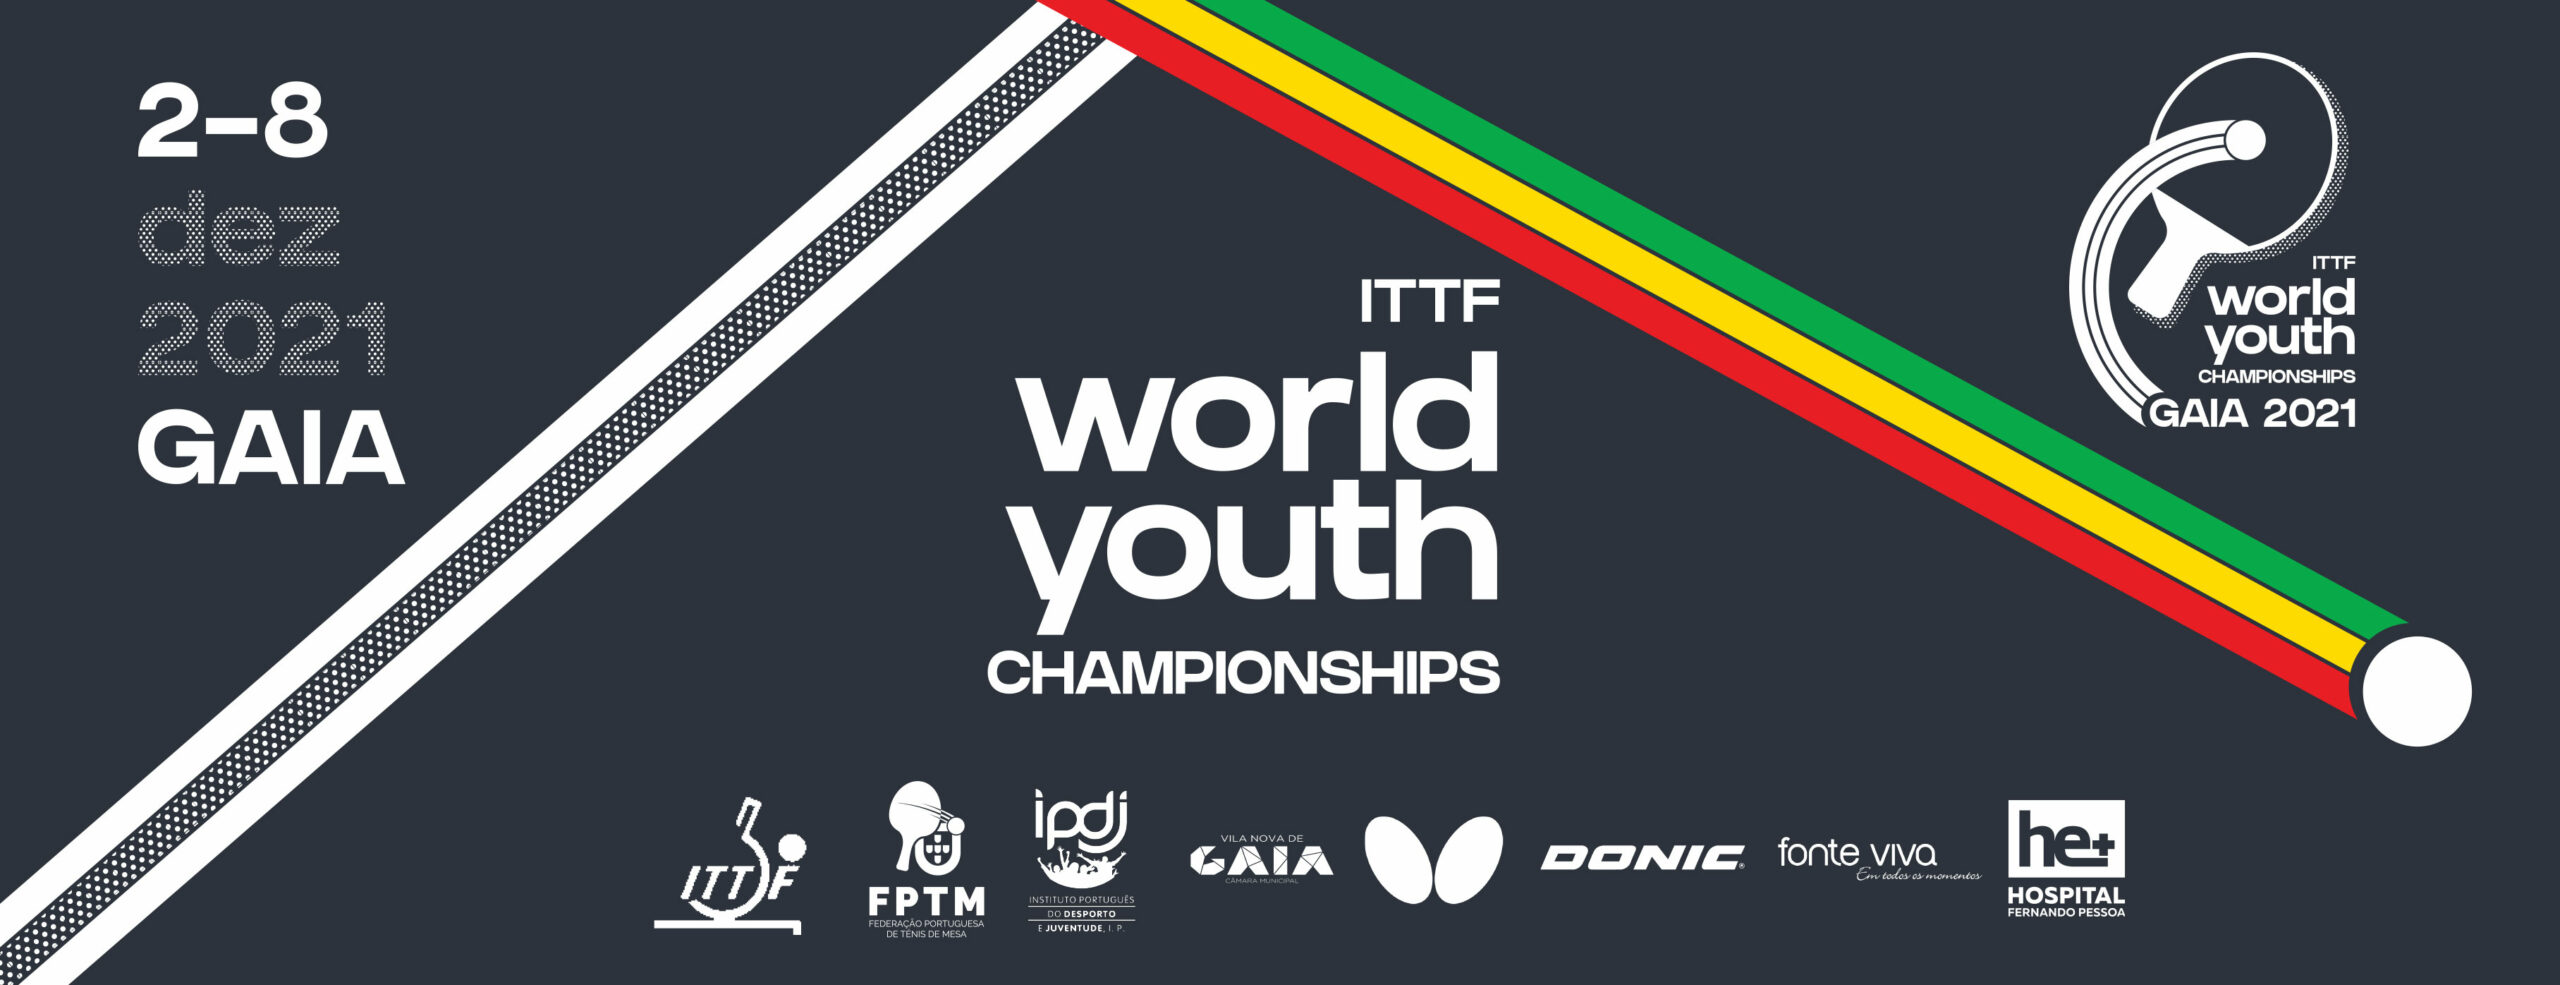 Mundial Youth começa quinta-feira